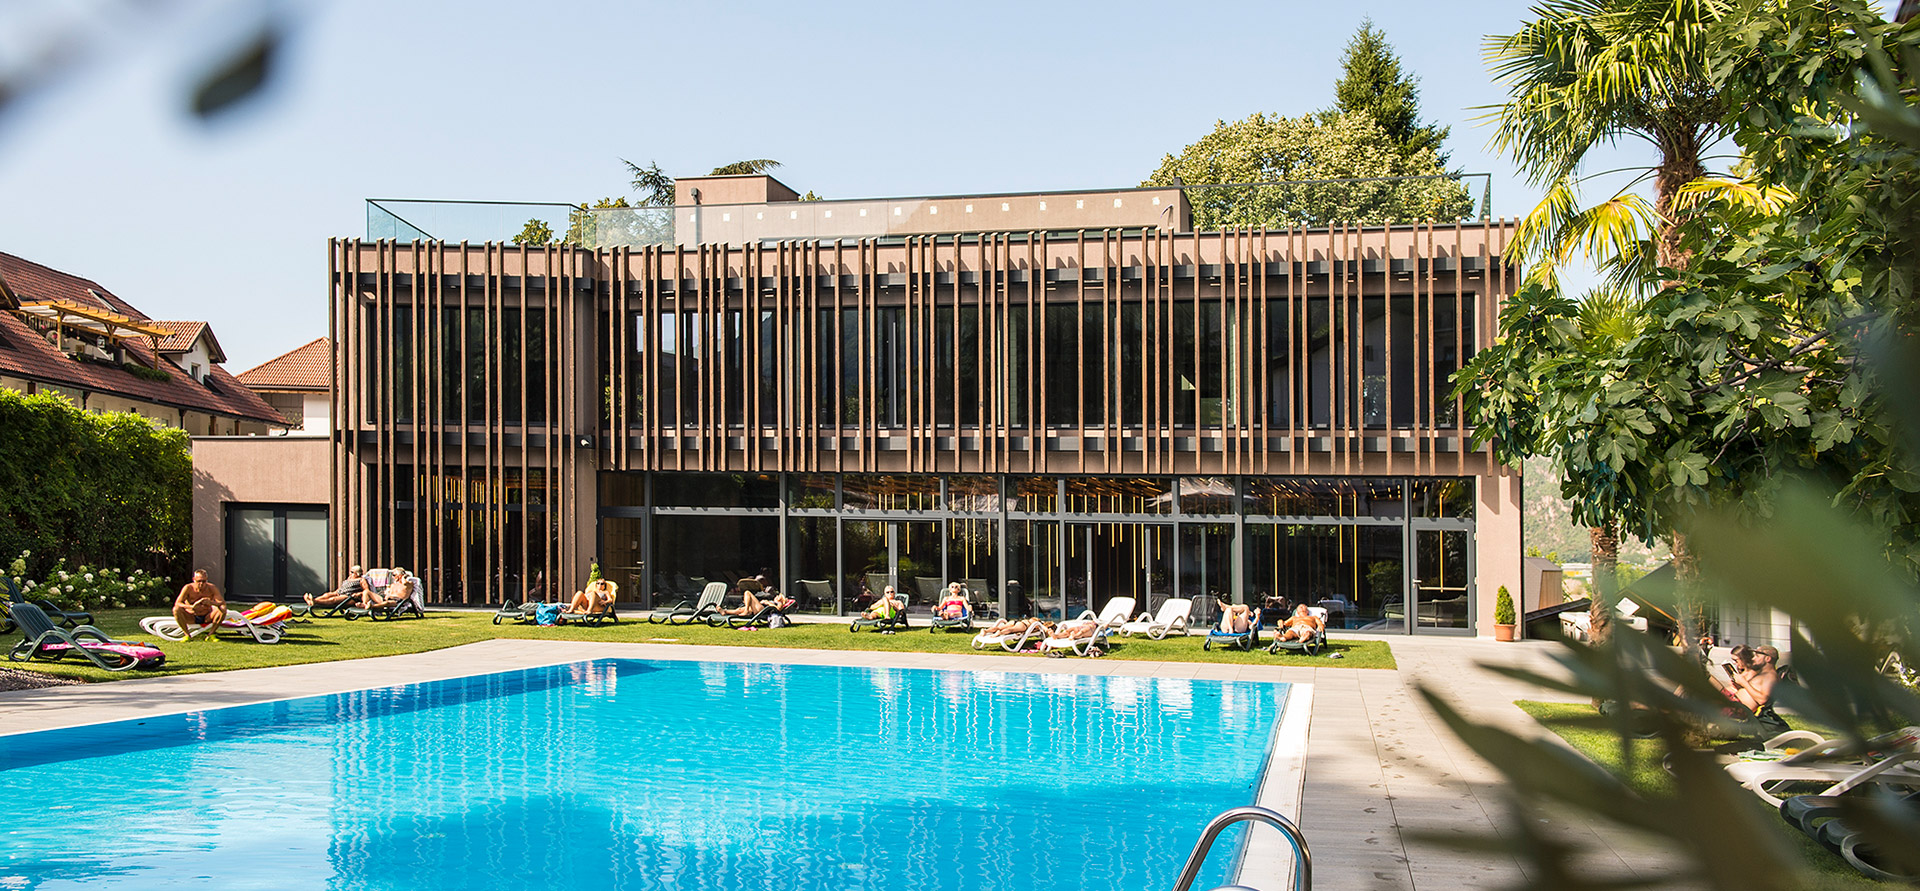 Freischwimmbad Hotel in Bozen Südtirol